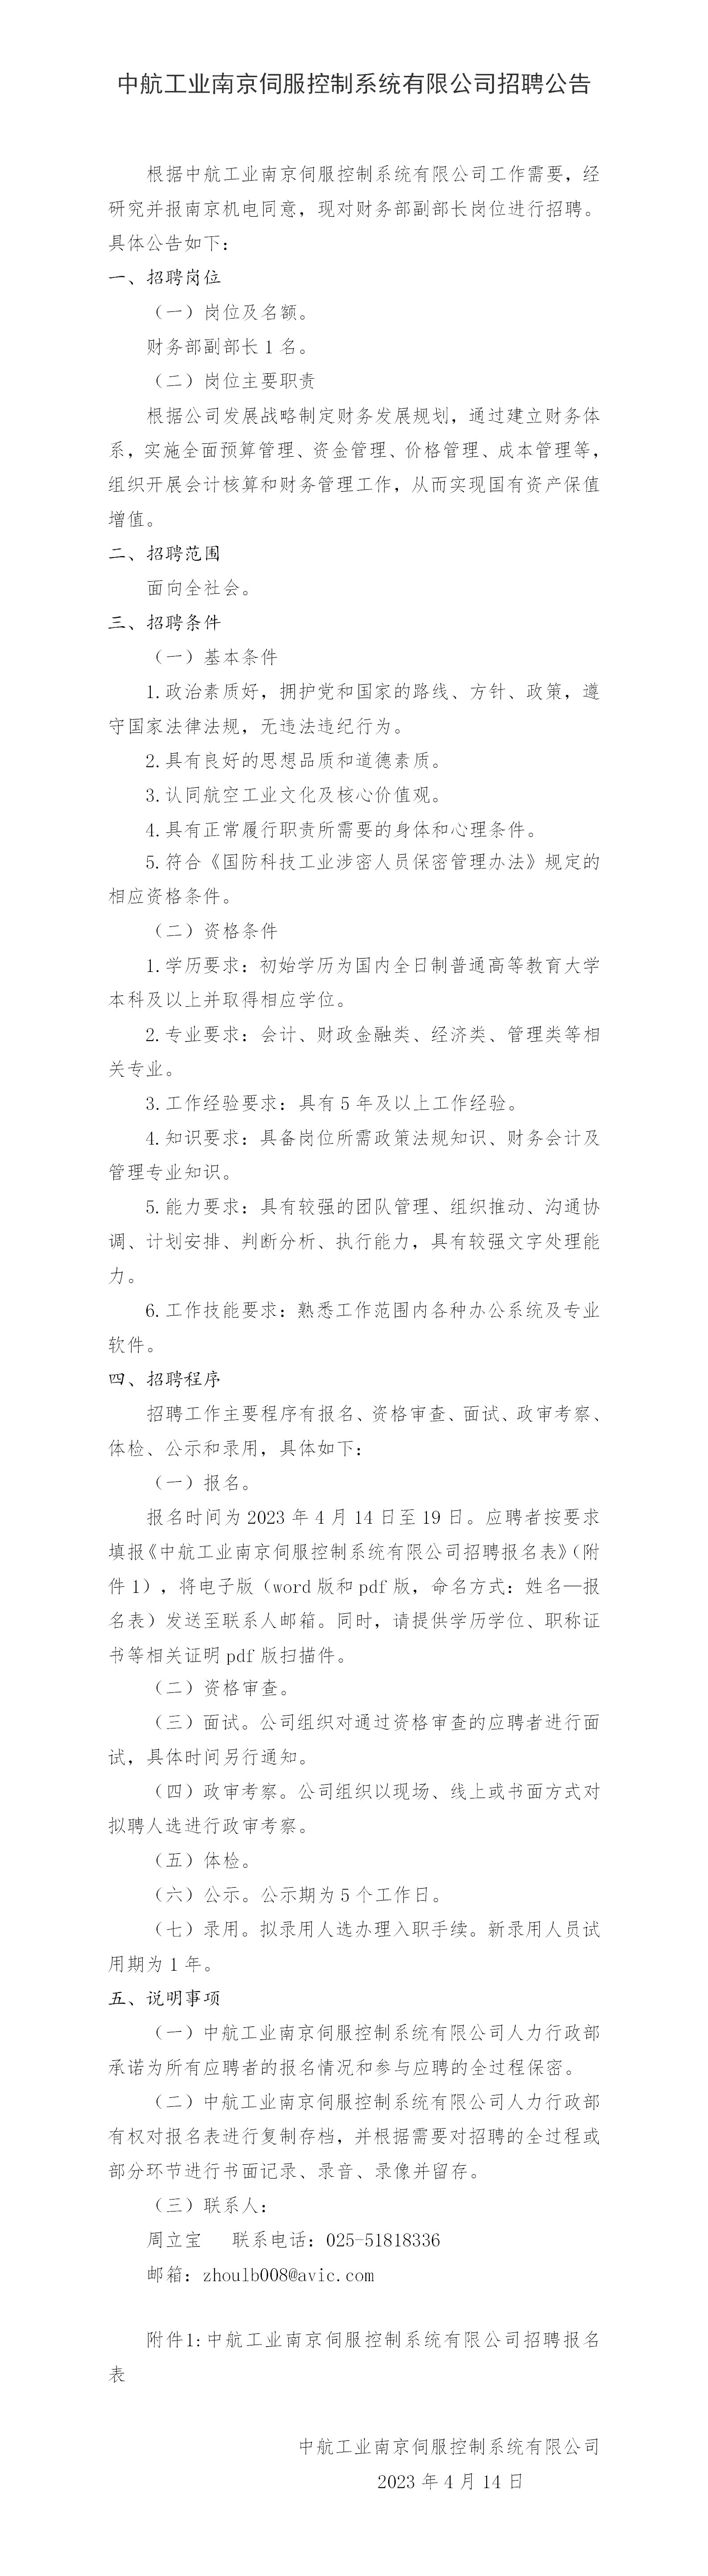 中航工业南京伺服控制系统有限公司招聘公告